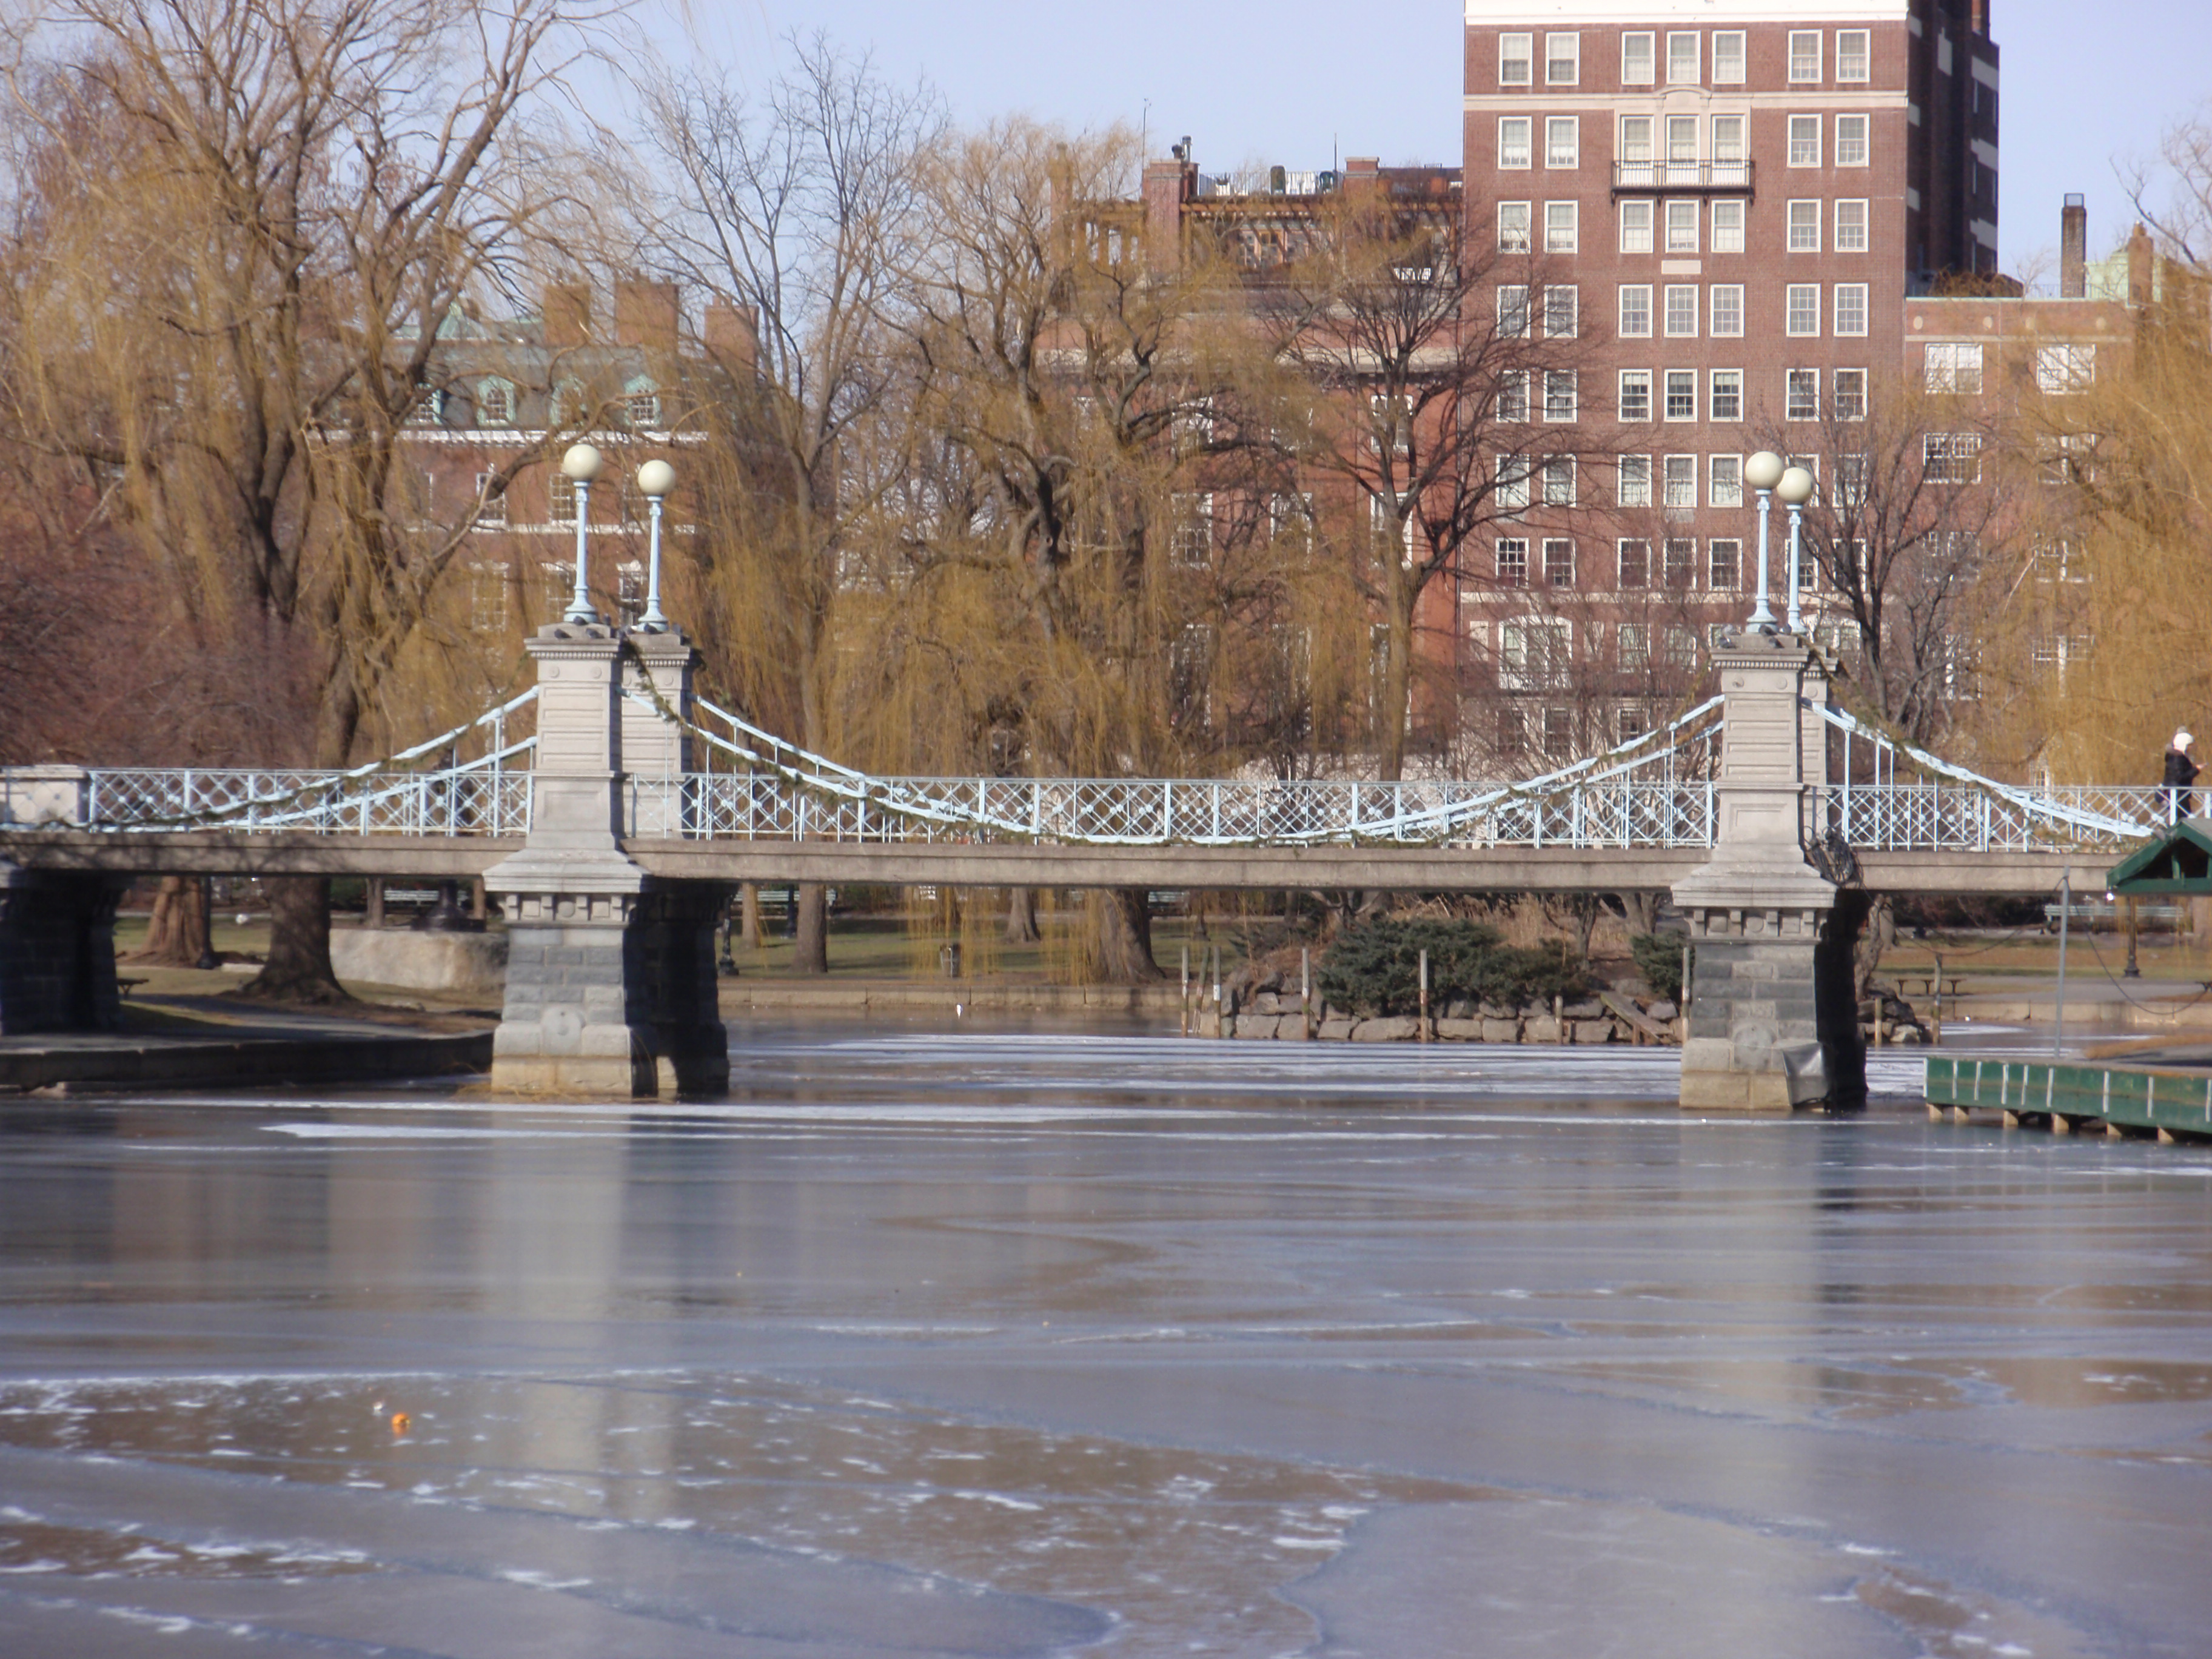 "A stroll across Boston's cutest bridge!"